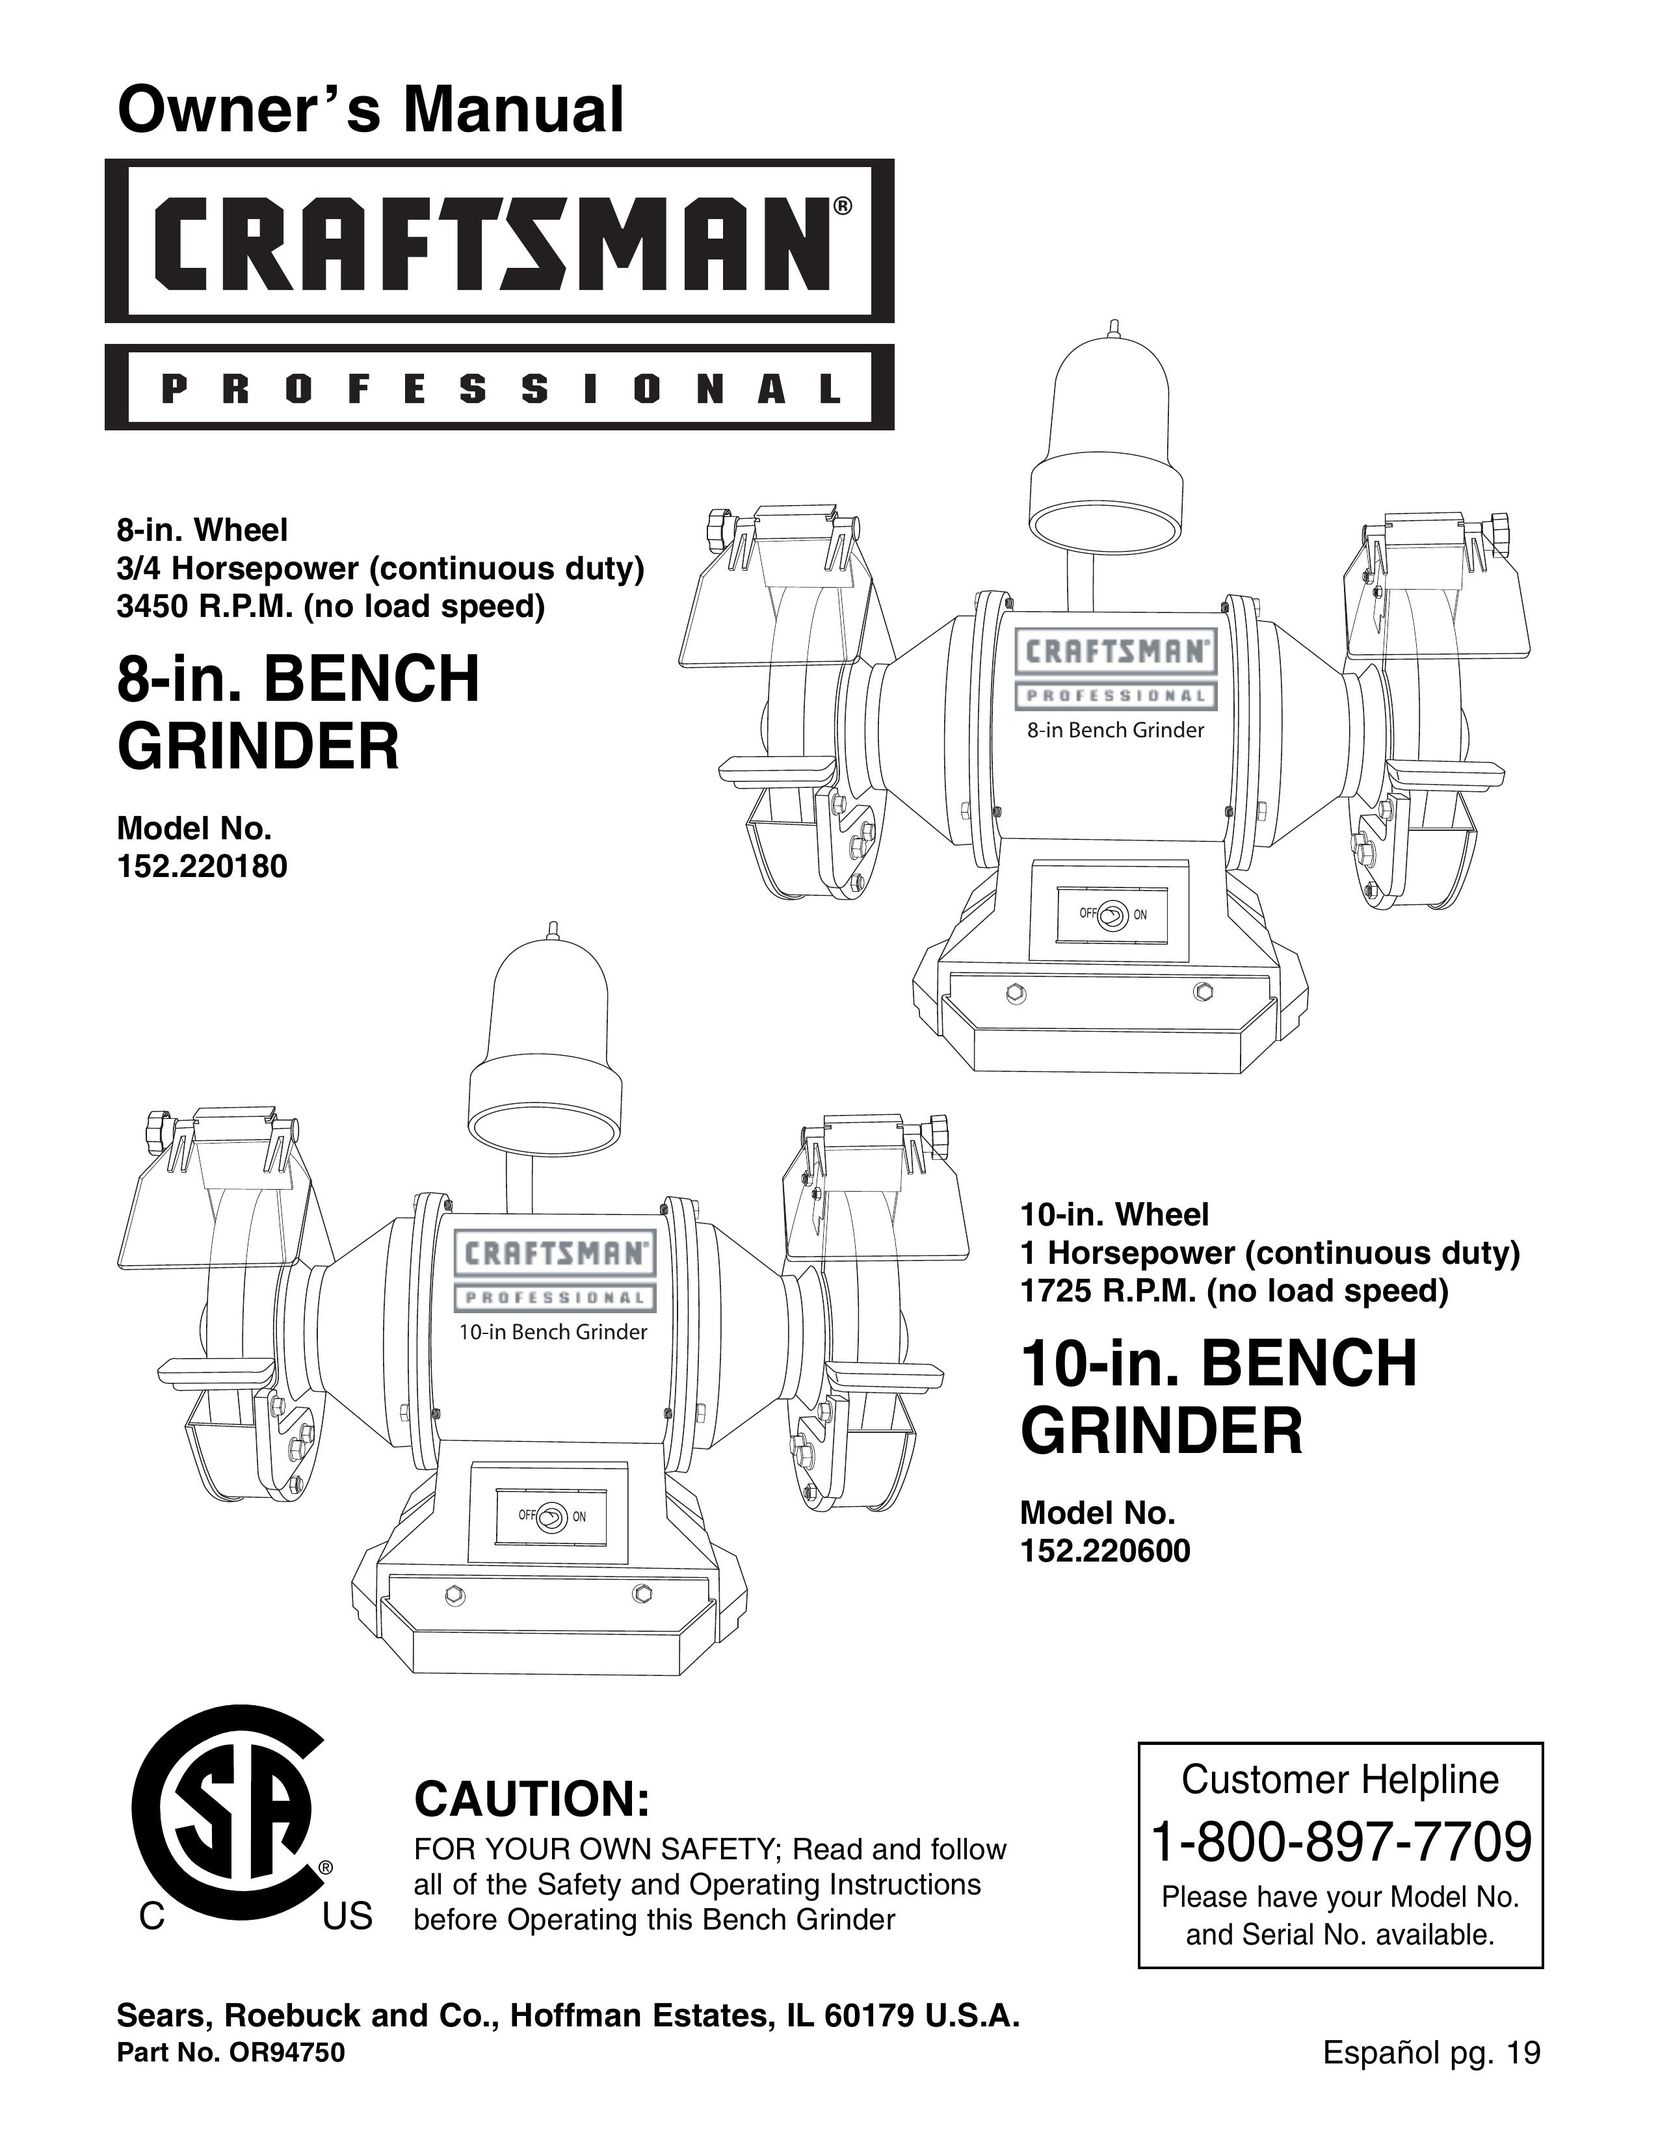 Craftsman 152.22018 Grinder User Manual